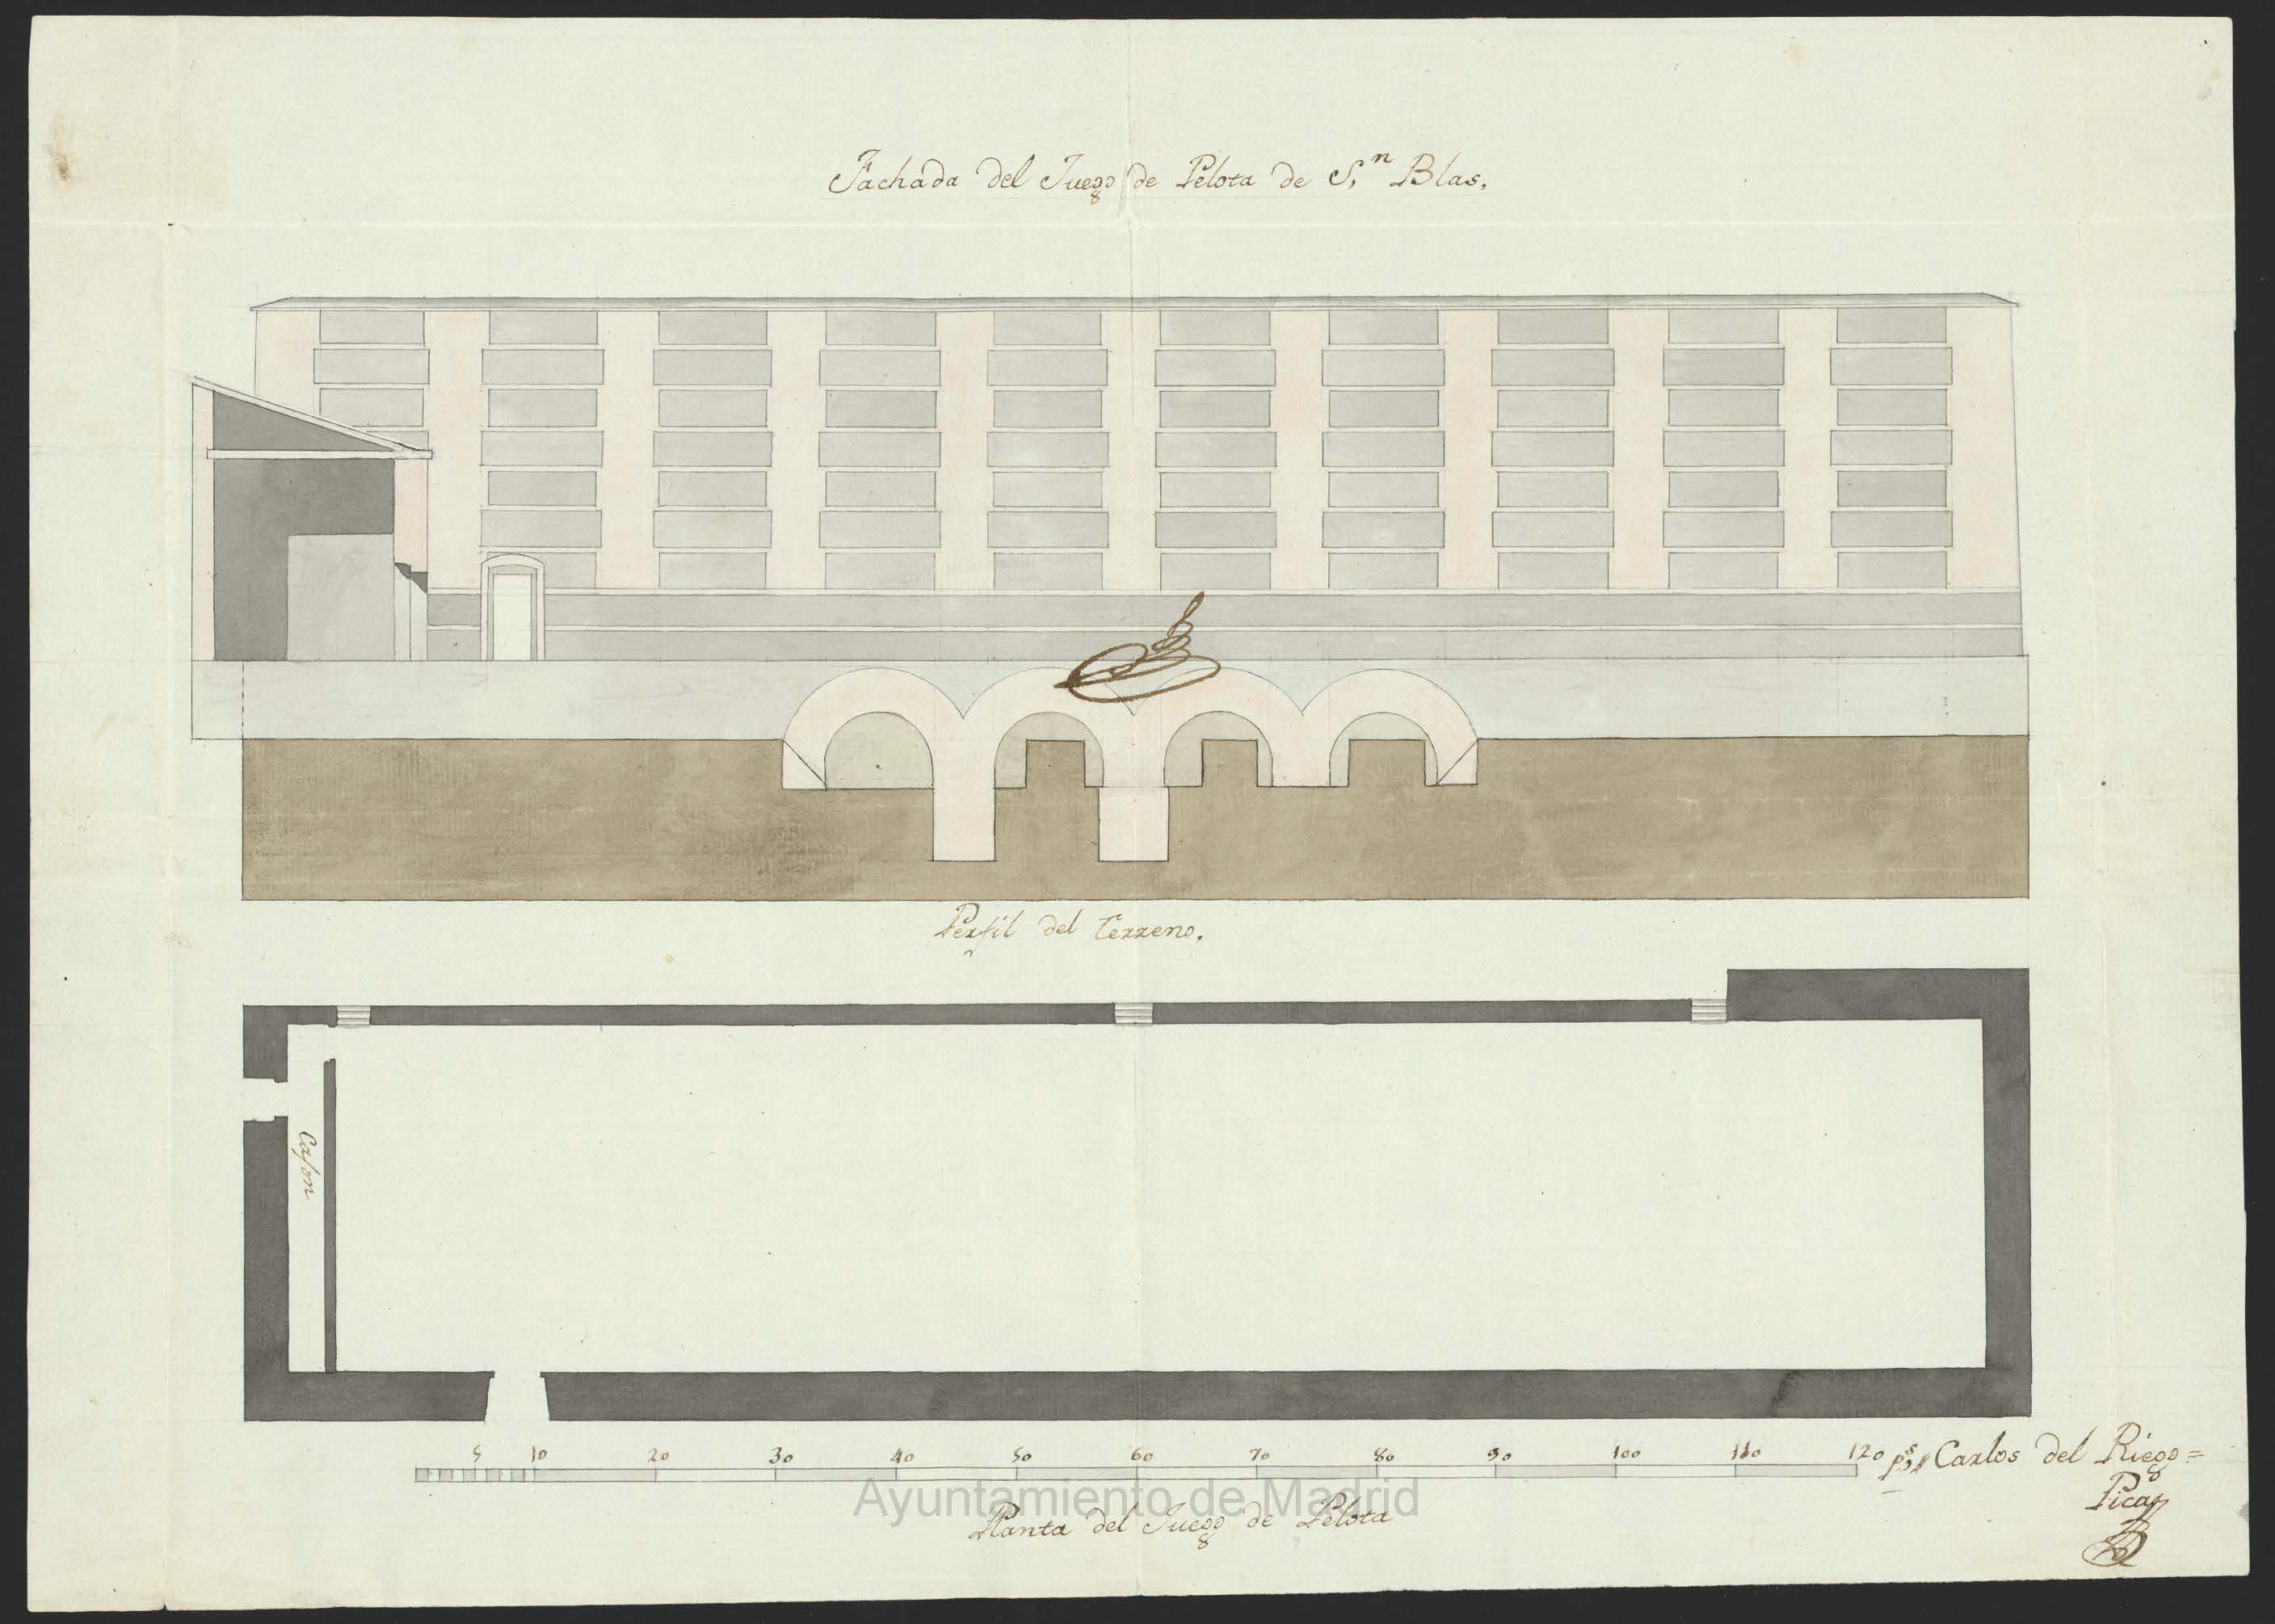 Plano del Juego de Pelota de la ermita de San Blas (1791)